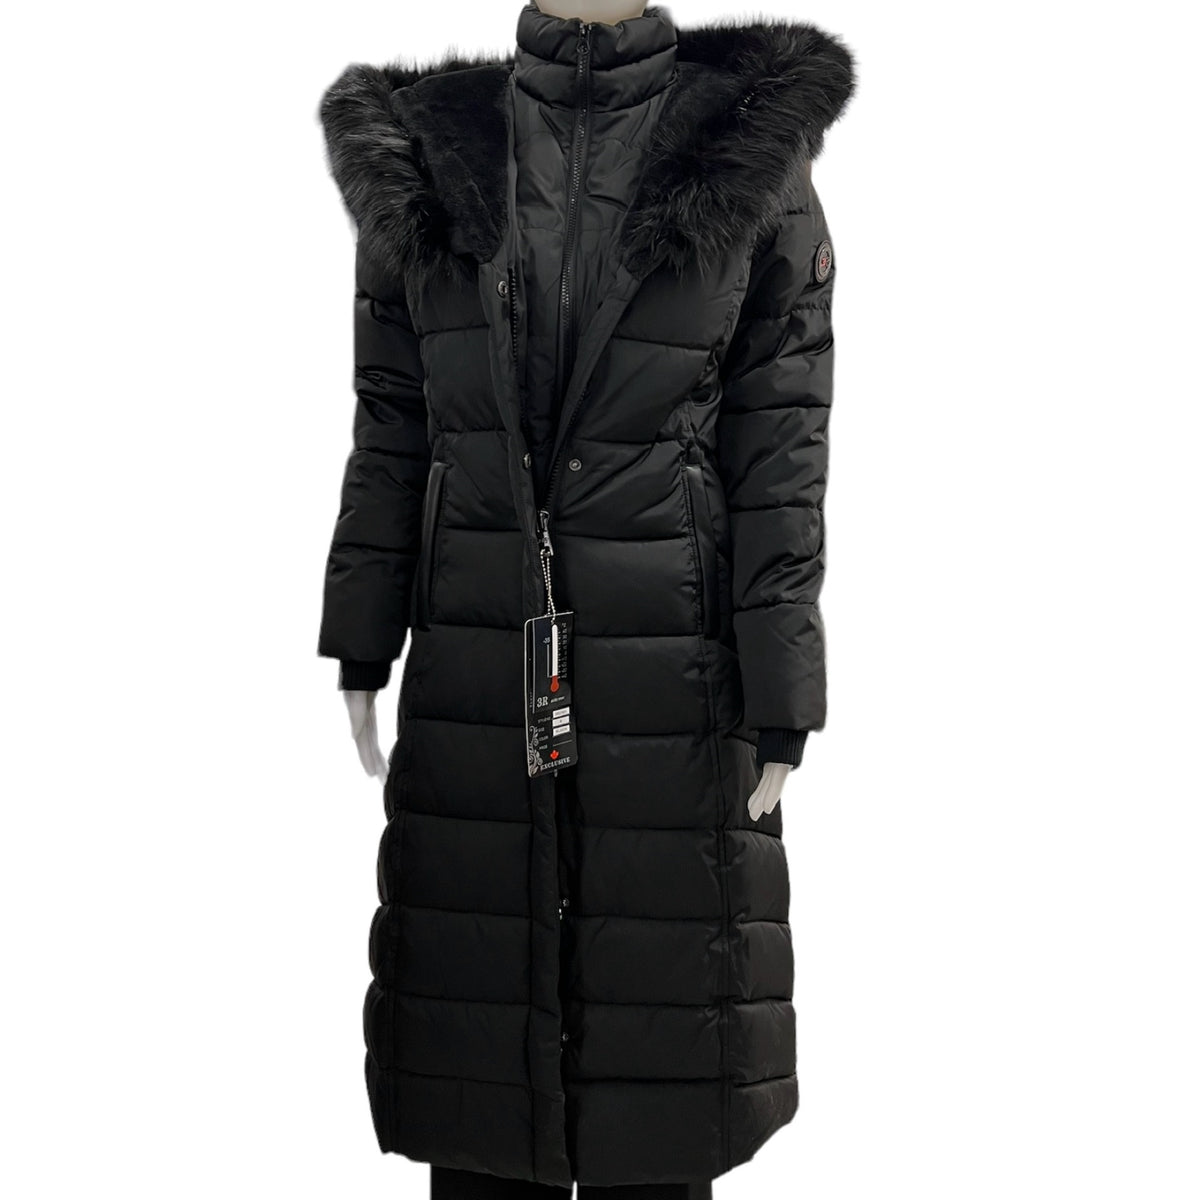 Vivez une expérience exceptionnelle par temps froid dans le manteau femme solde 3R Arctic Wear Marine! Offrant une chaleur et une confort inégalés, ce manteau soldé est parfait pour se protéger du froid en extérieur.